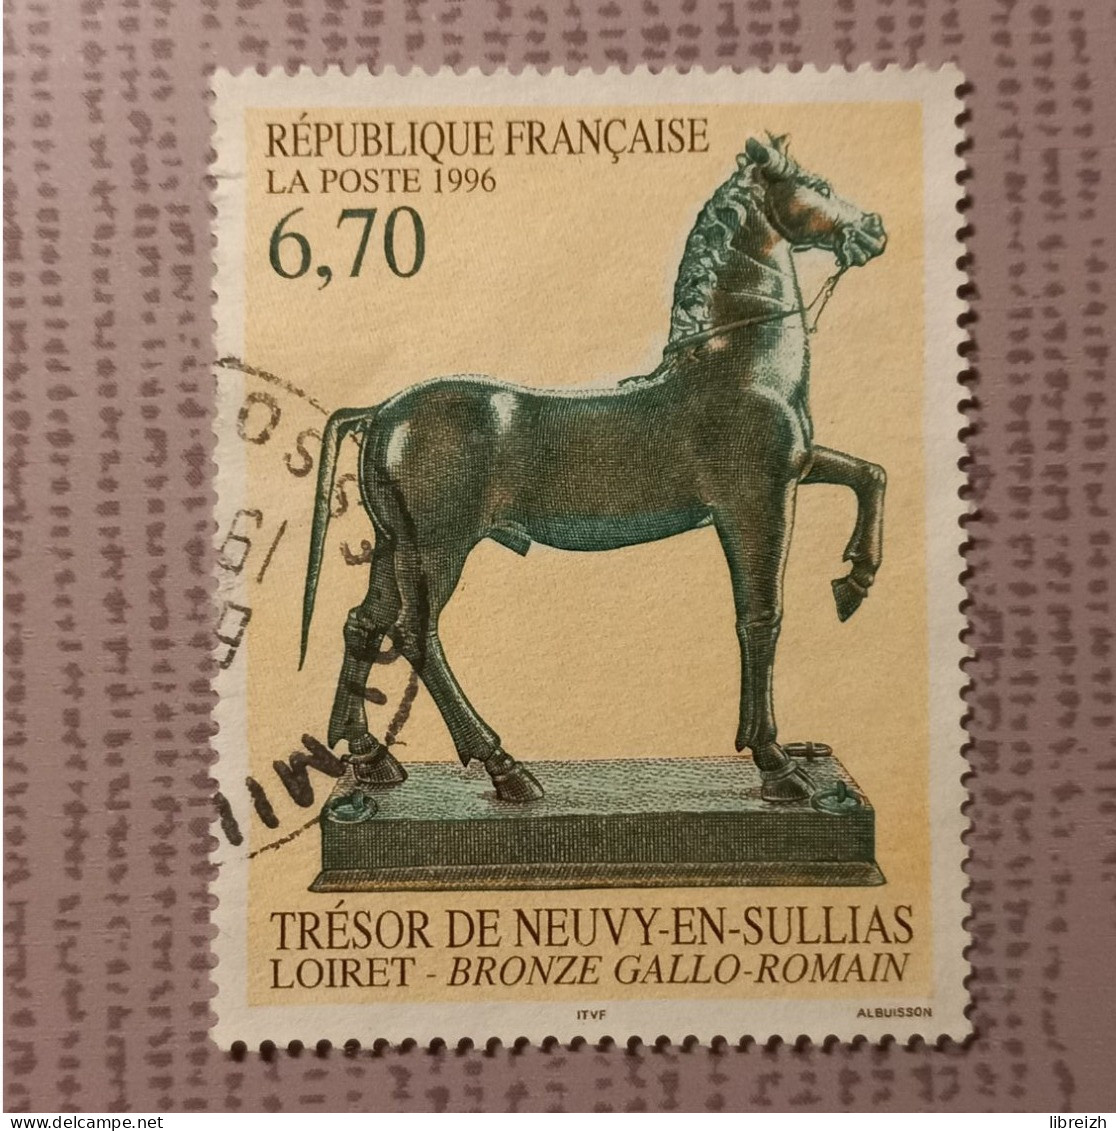 Le Trésor De Neuvy-en-Sullias  N° 3014 Année 1996 - Used Stamps